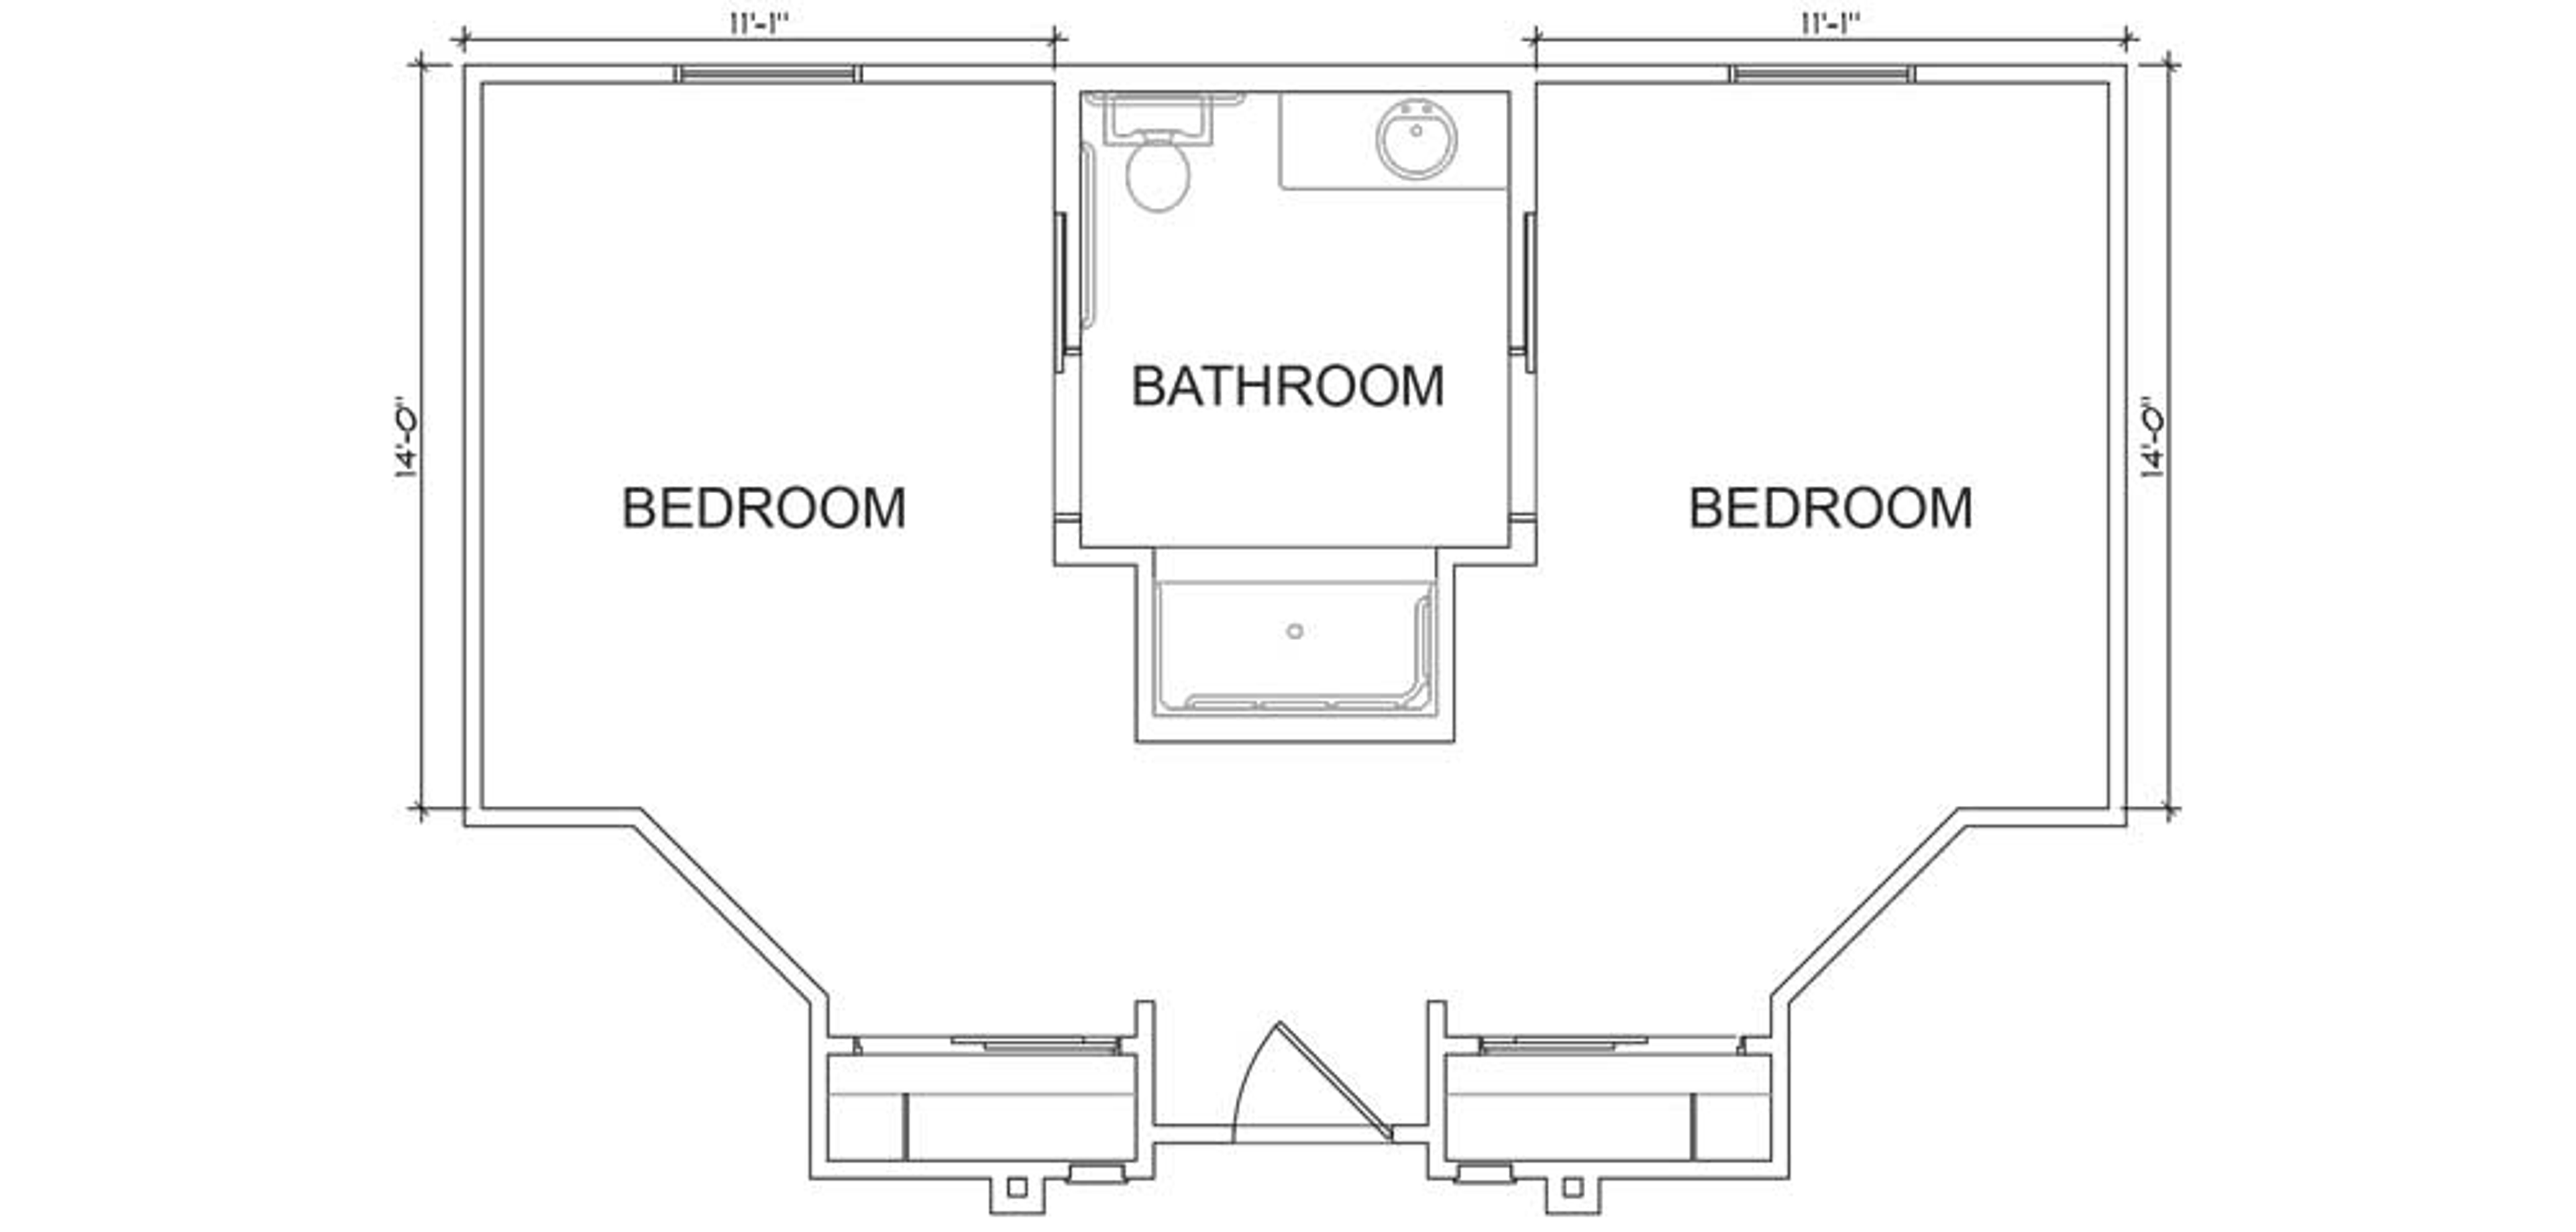 Floorplan - Heritage Oaks - 2B 1B Companion suite MC